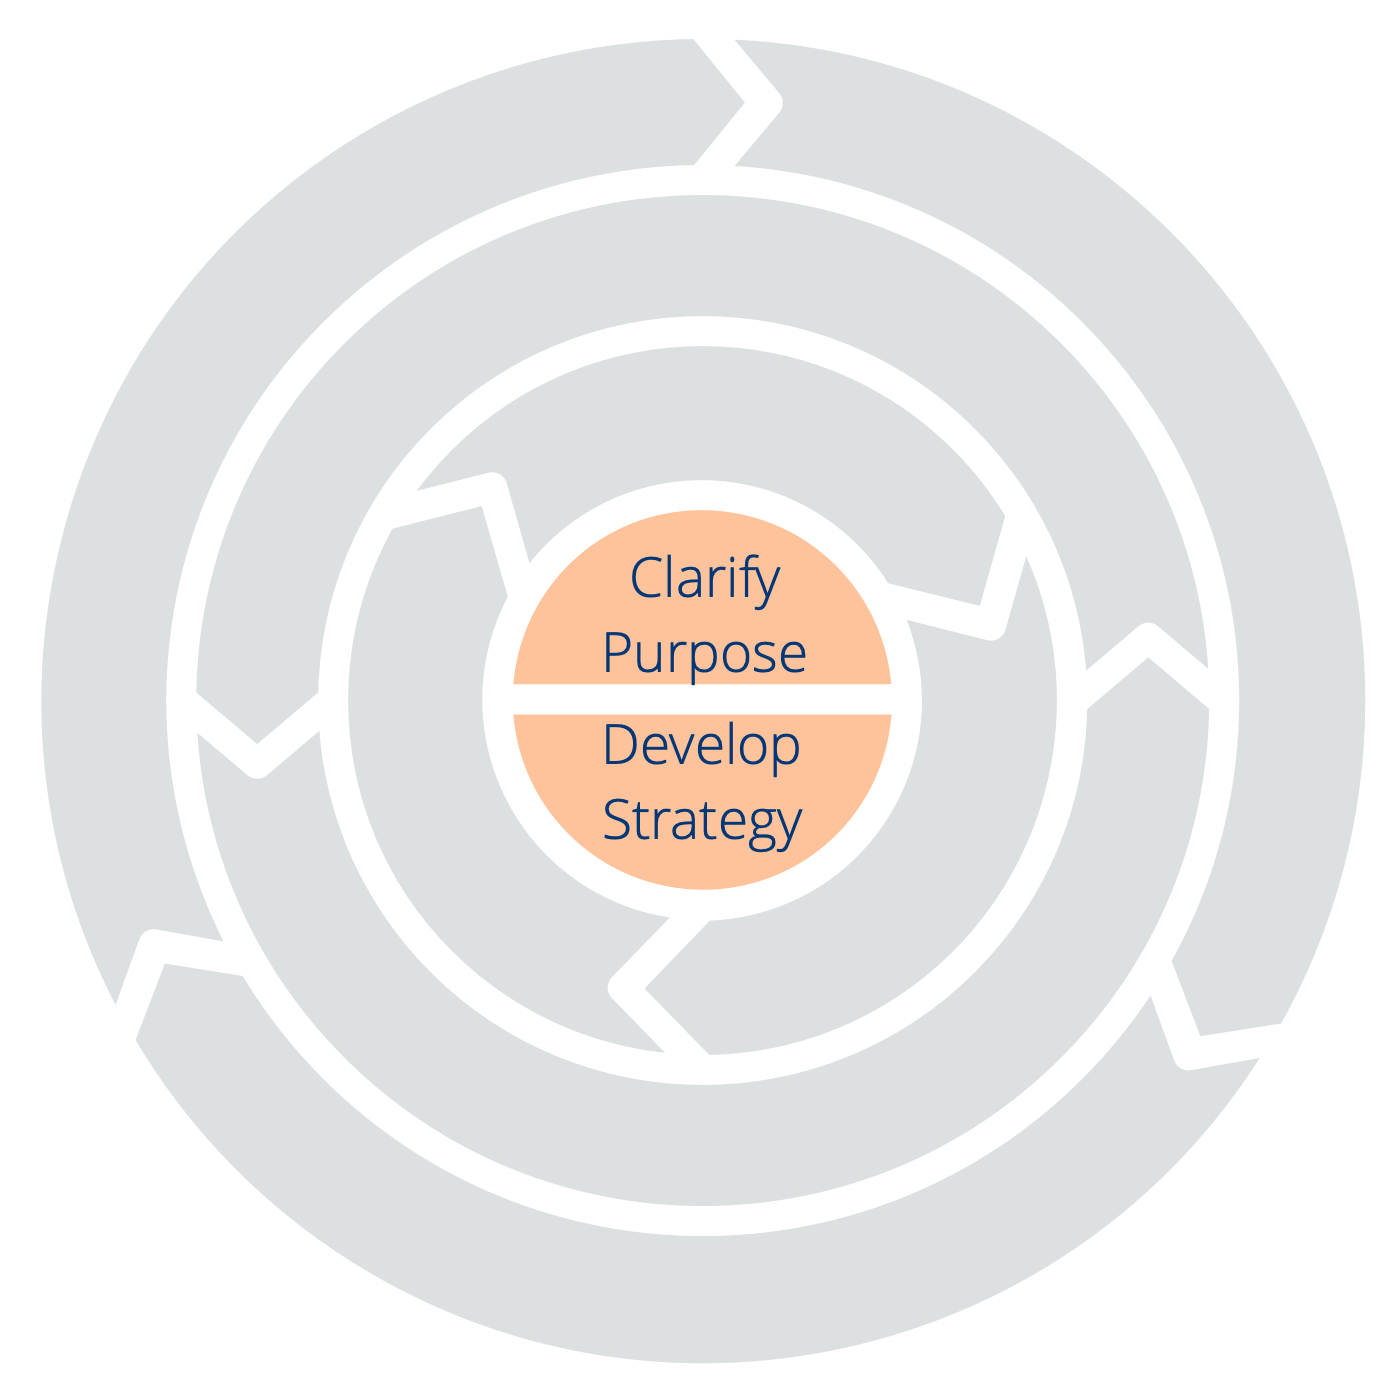 Två principer för orientering: Förtydliga syfte – Utveckla strategi